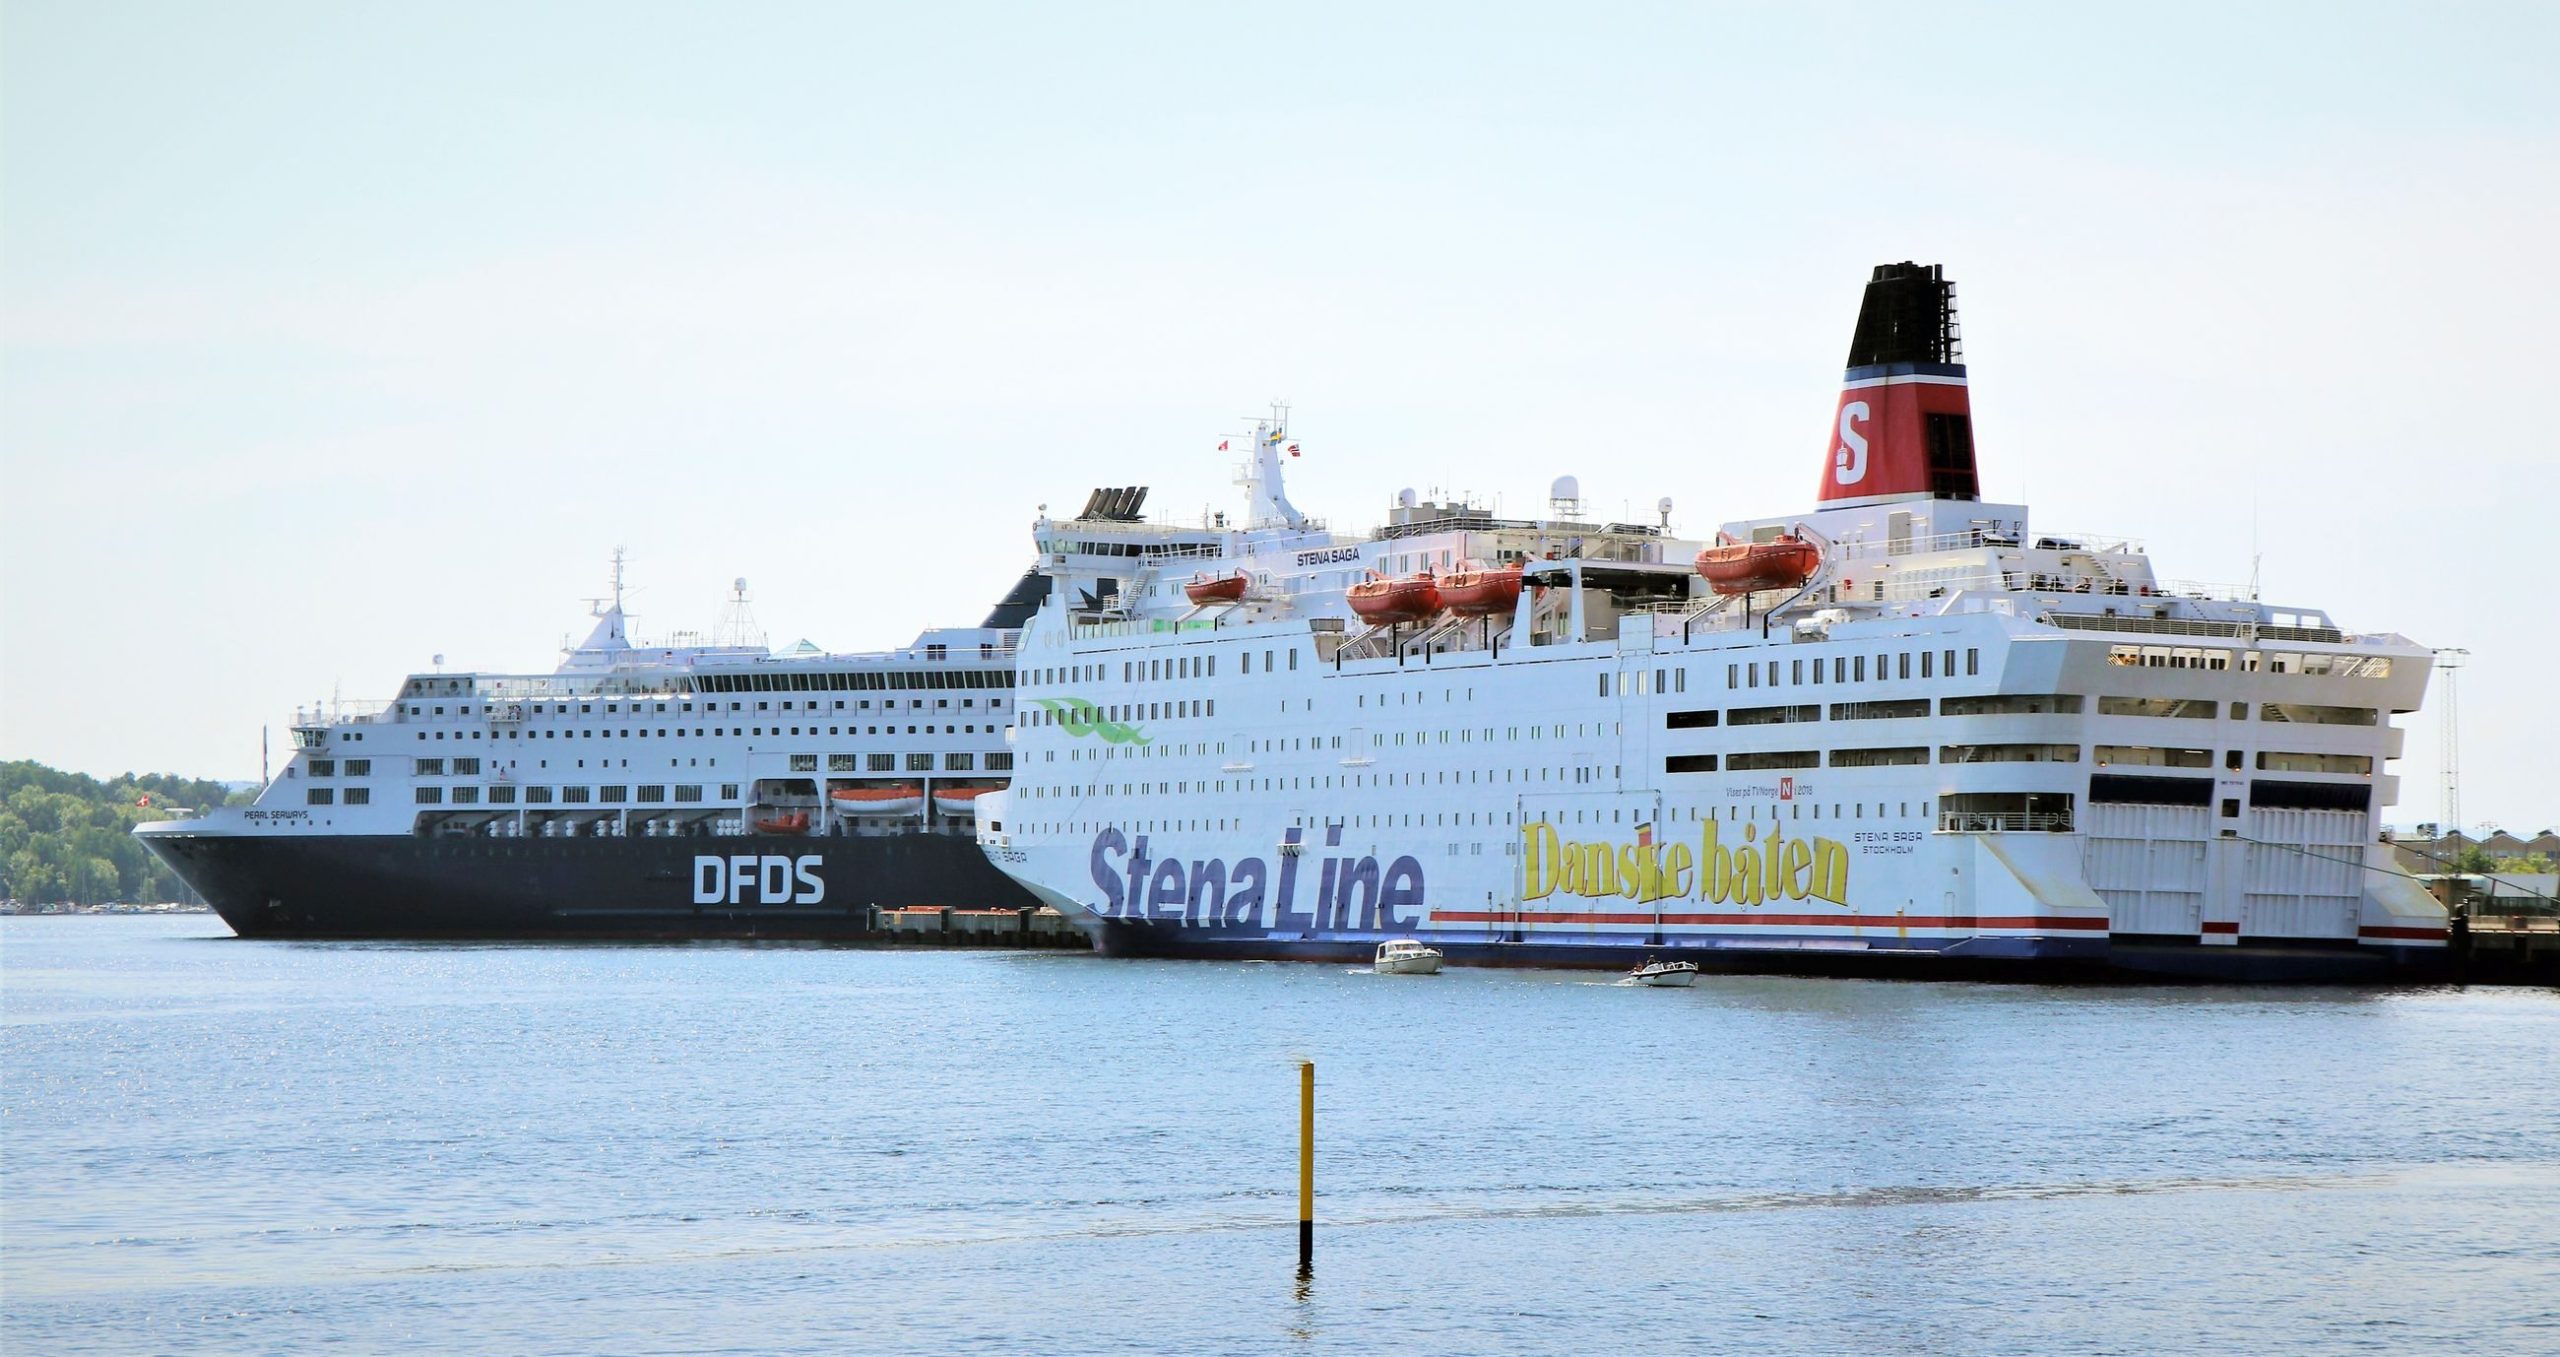 Gå til Oslo tar steget mot en utslippsfri havn